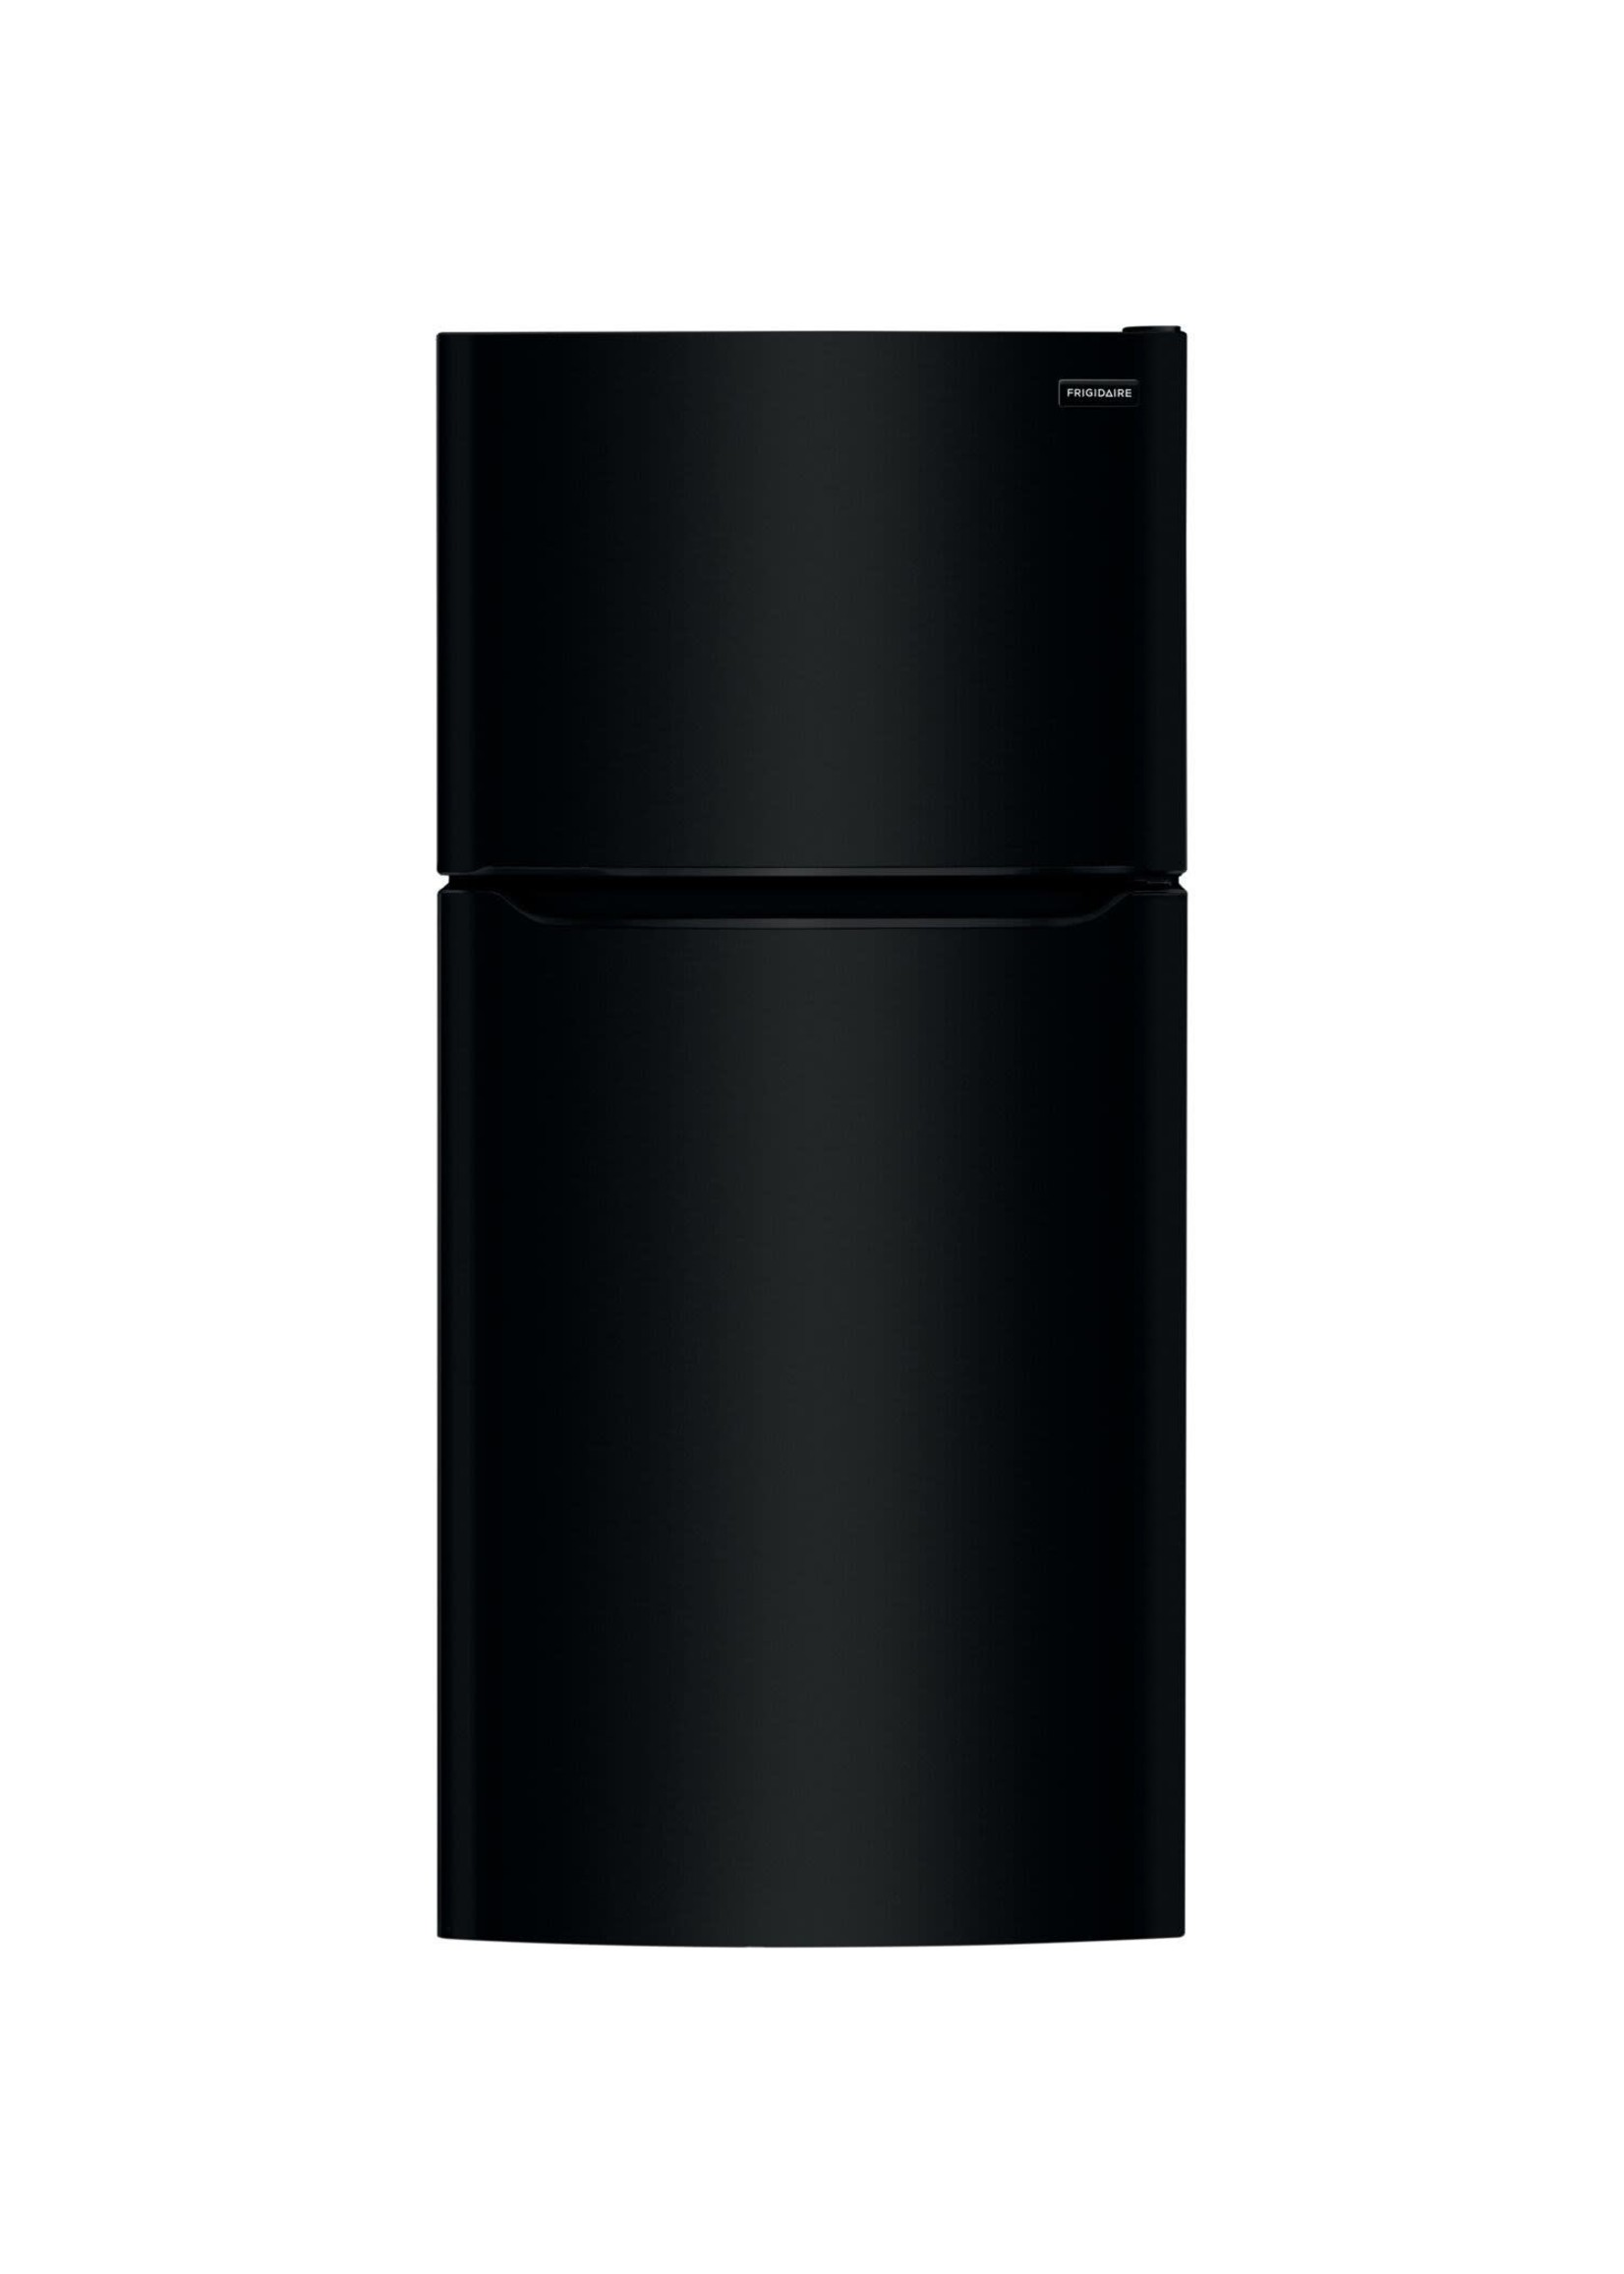 FRIGIDAIRE Frigidaire 18.3 CF Top Mount Refrigerator Glass Shelves ADA OPT-ICEMAKER - Black